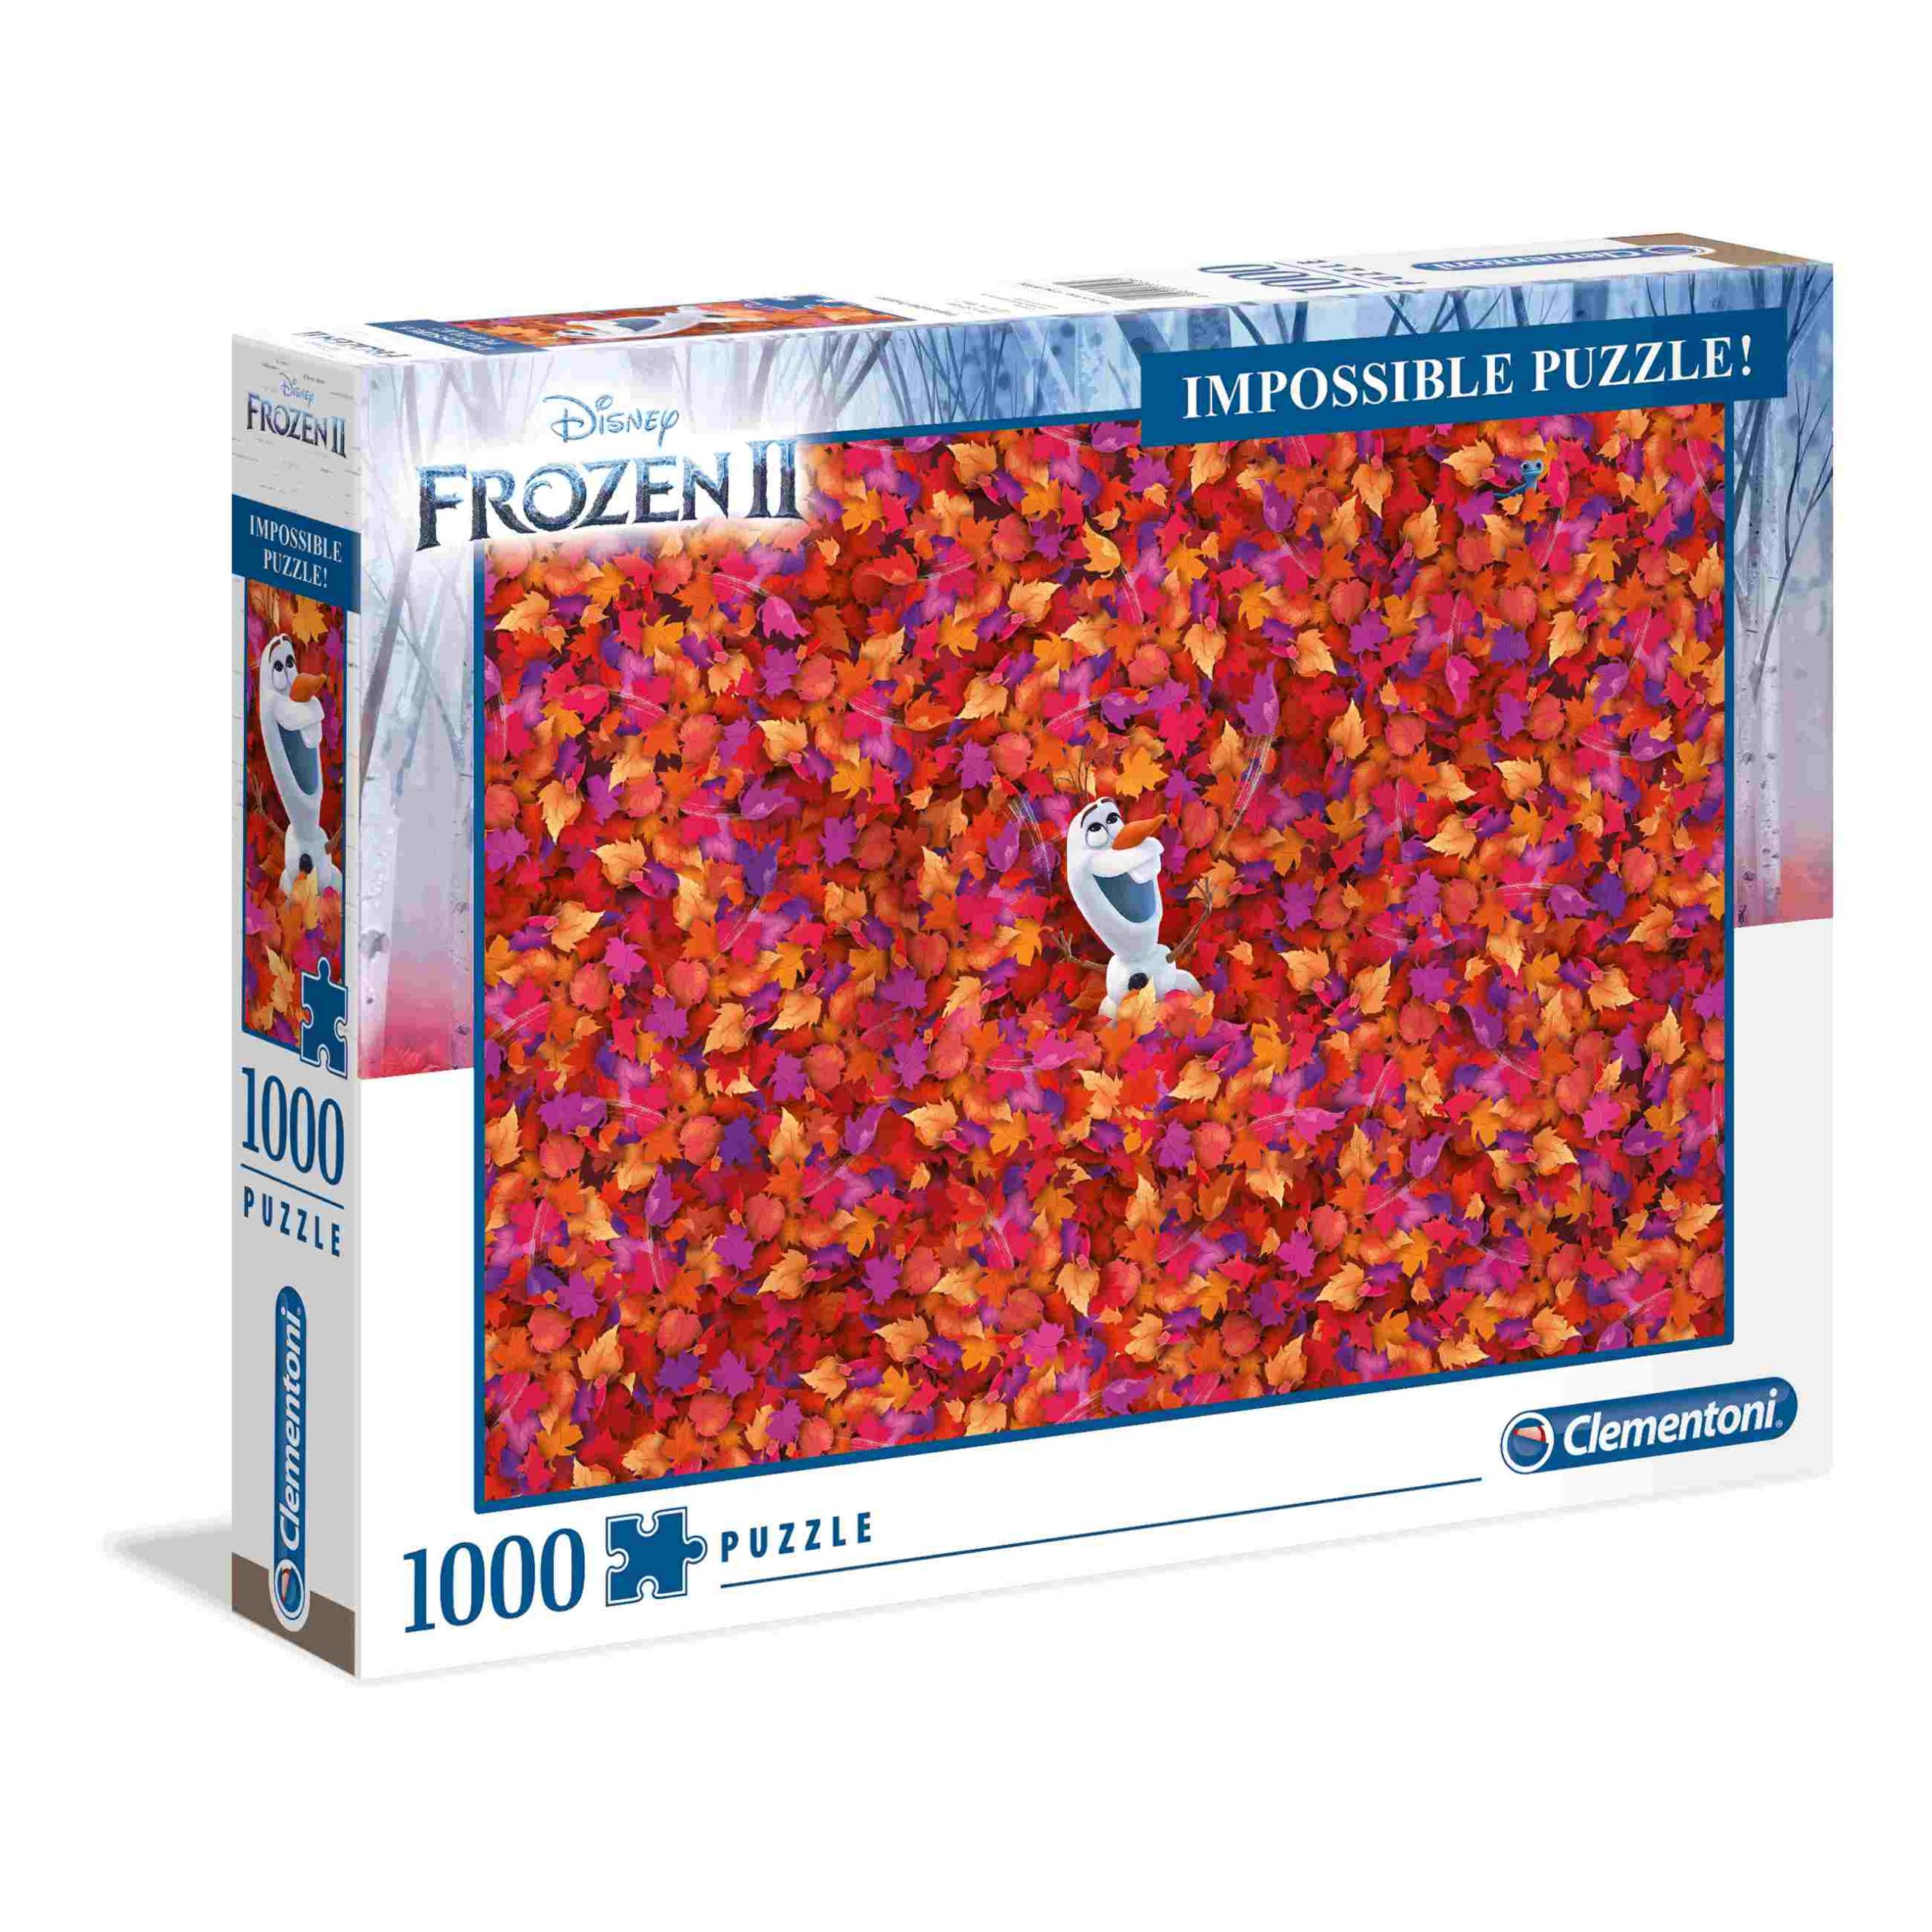 Clementoni puzzle impossible disney frozen 2 - 1000 pezzi - CLEMENTONI, DISNEY PRINCESS, Frozen